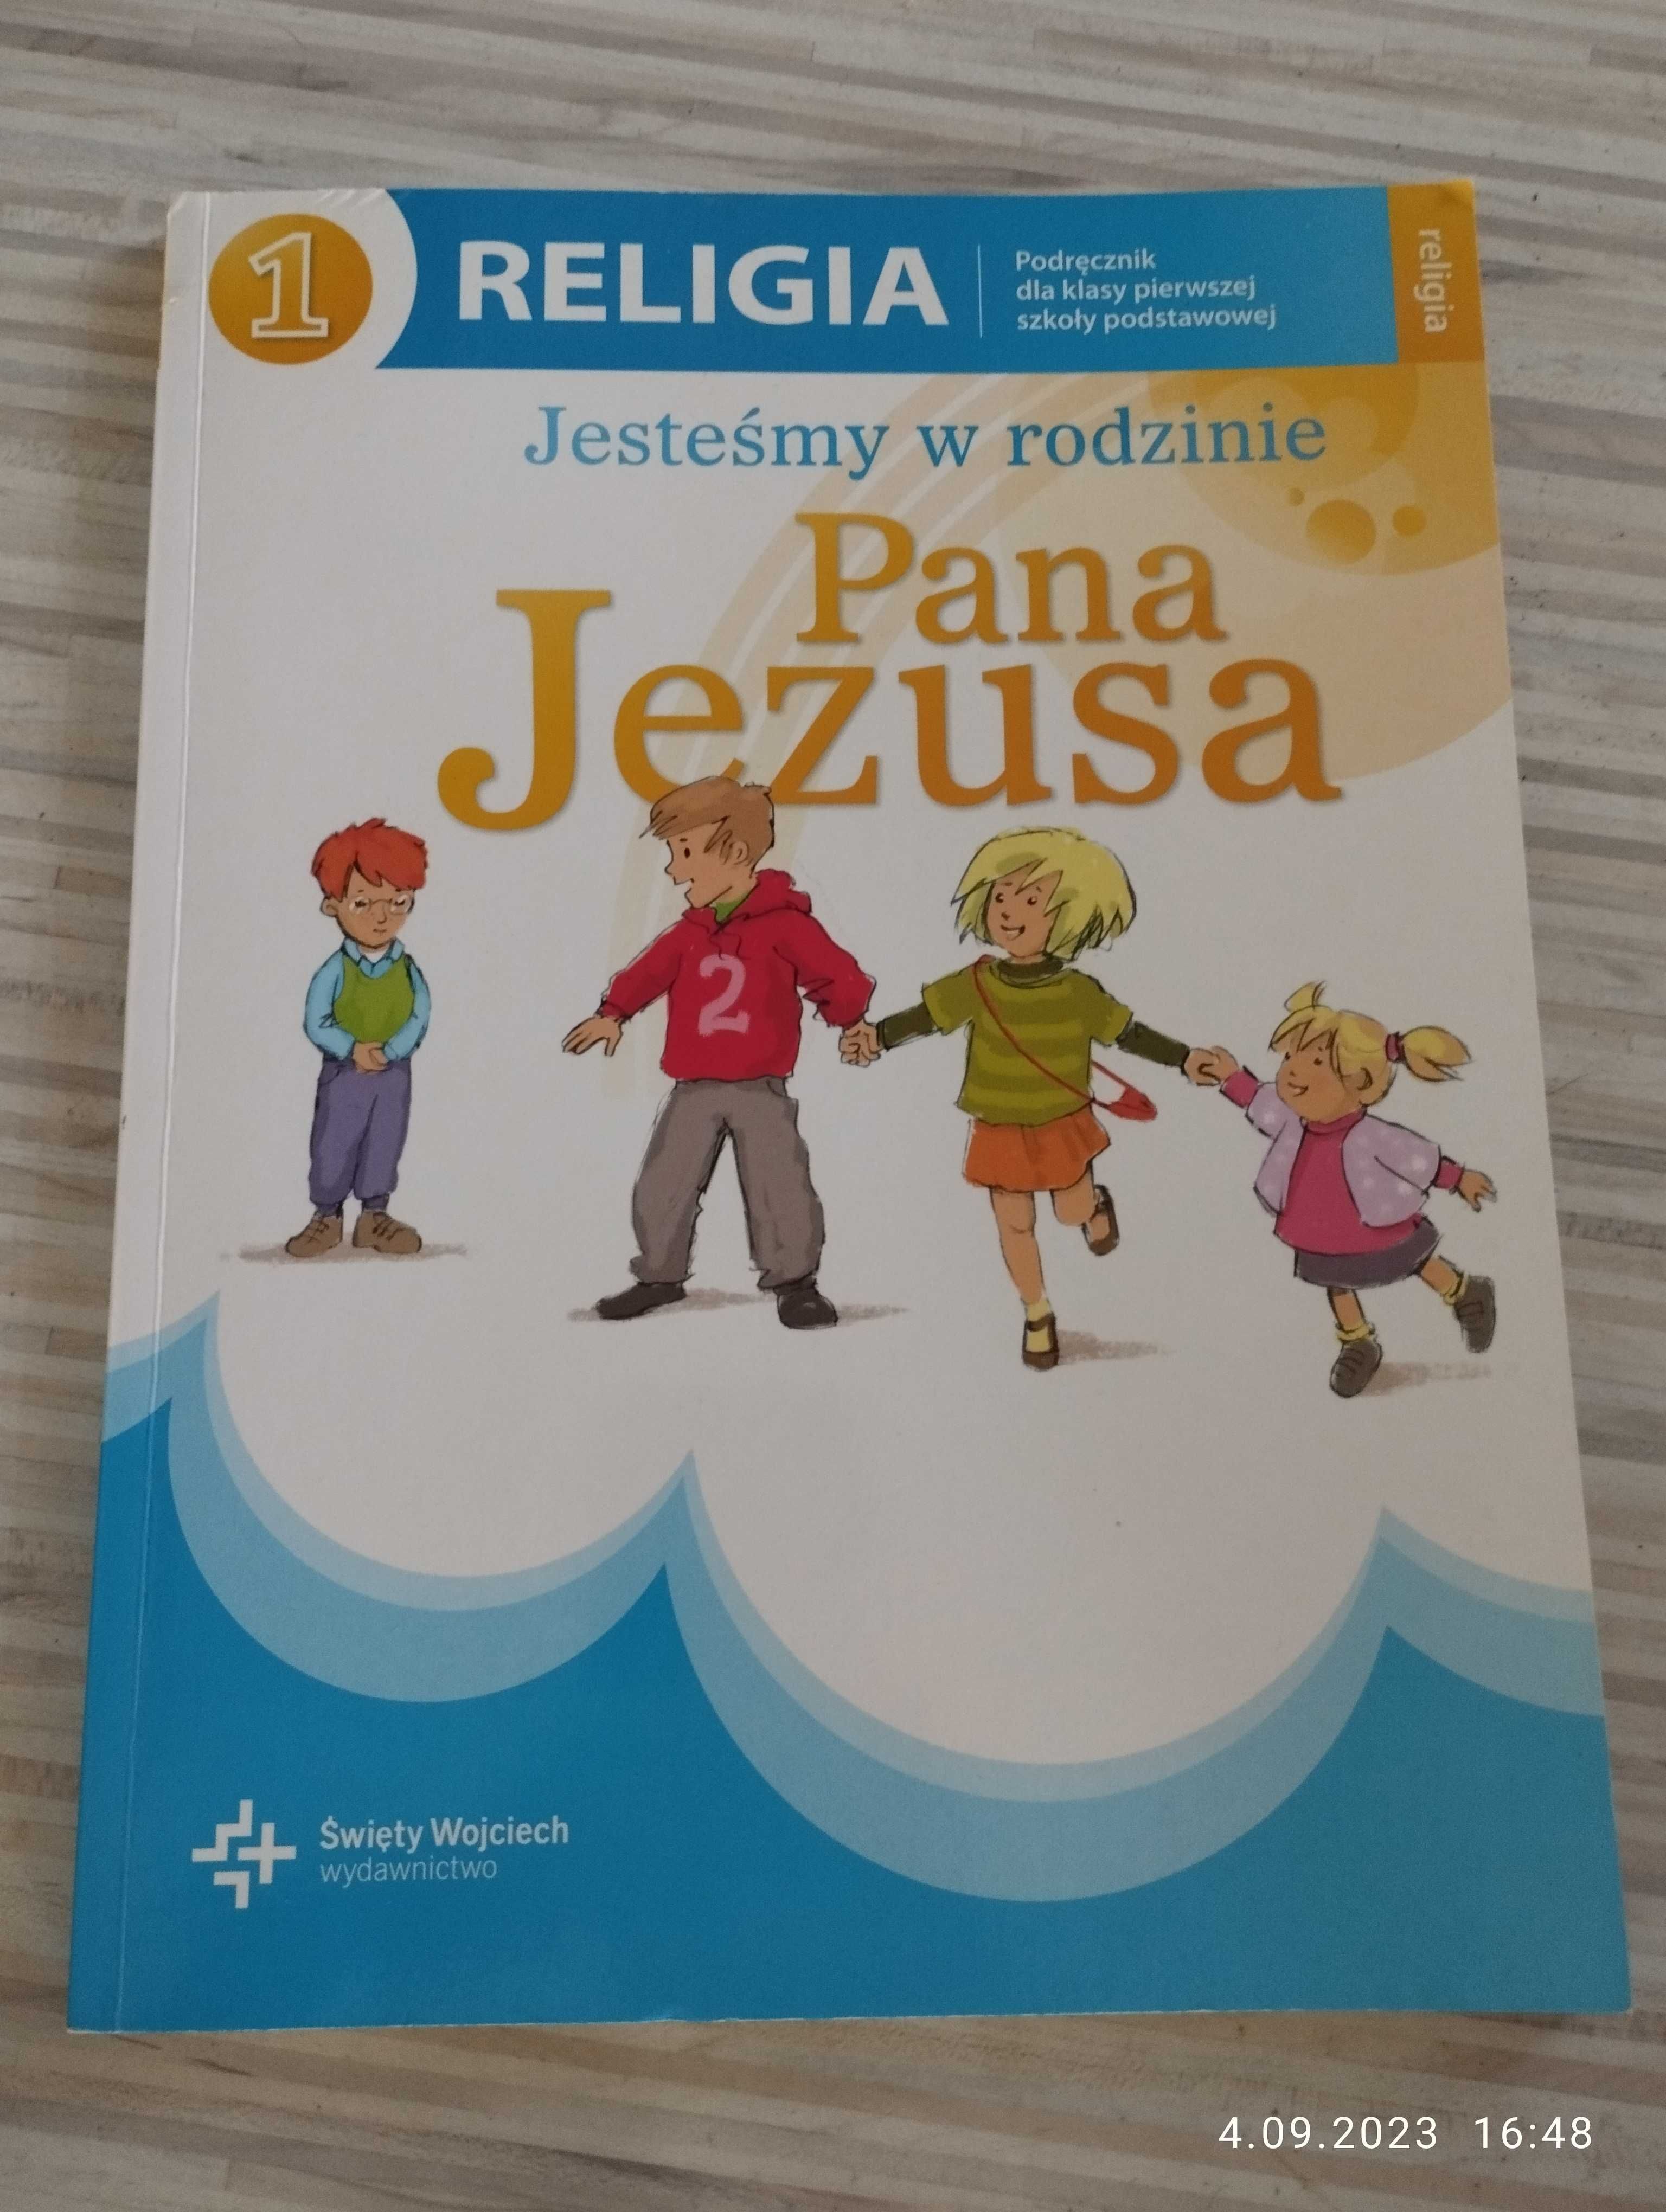 Podręcznik do religii dla klasy 1 - "Jesteśmy w rodzinie Pana Jezusa".